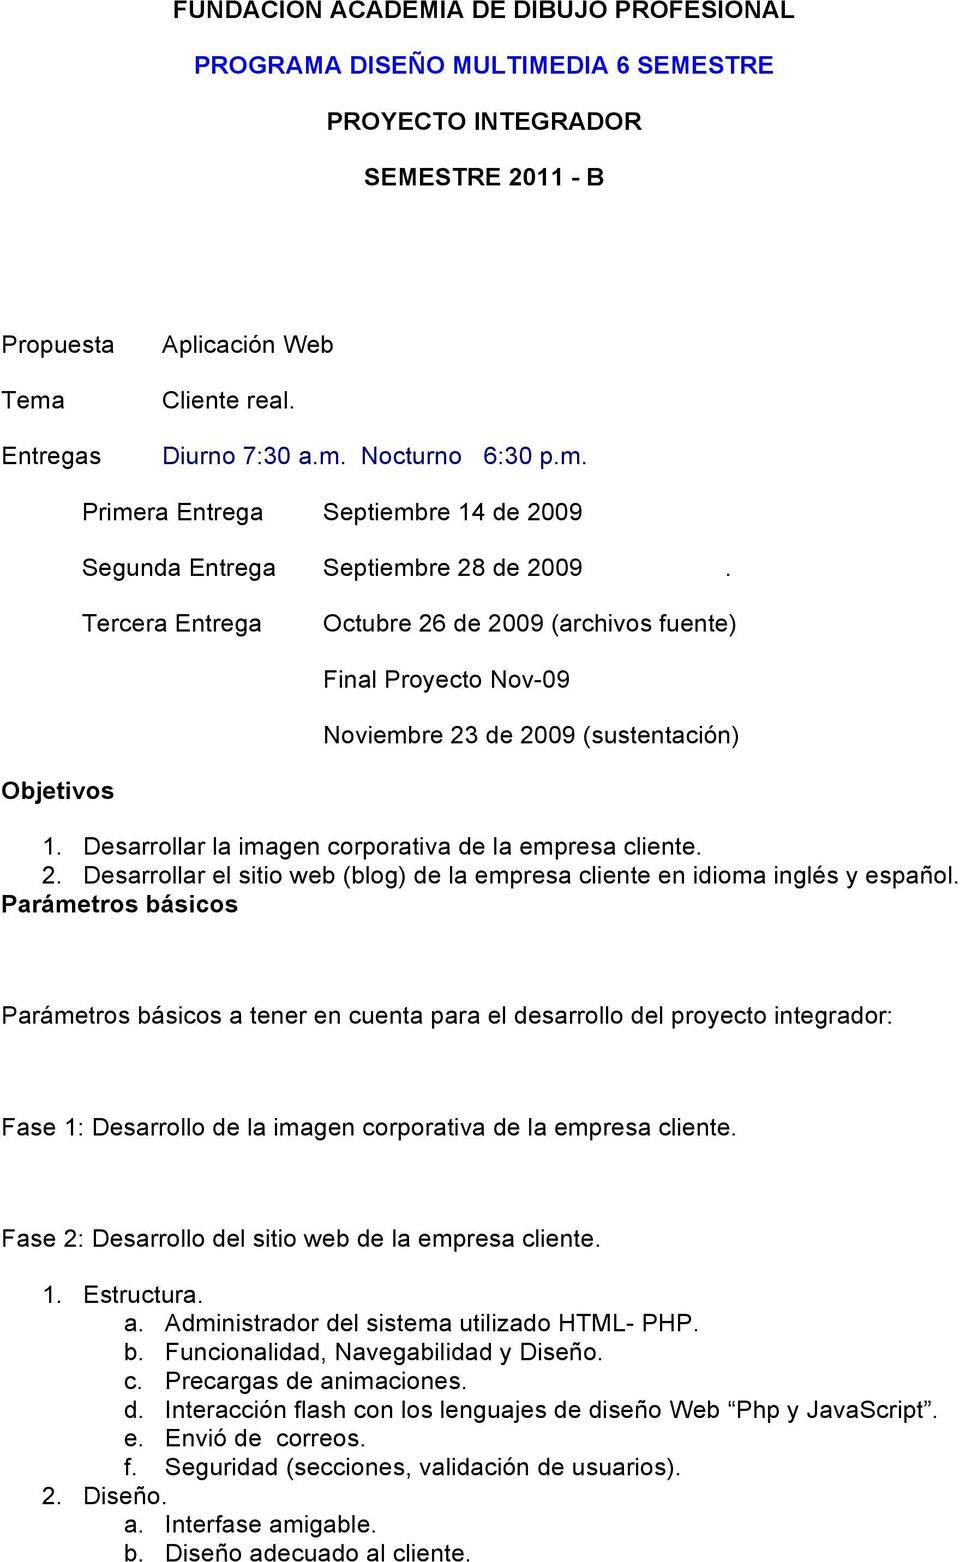 Tercera Entrega Octubre 26 de 2009 (archivos fuente) Final Proyecto Nov-09 Noviembre 23 de 2009 (sustentación) Objetivos 1. Desarrollar la imagen corporativa de la empresa cliente. 2. Desarrollar el sitio web (blog) de la empresa cliente en idioma inglés y español.